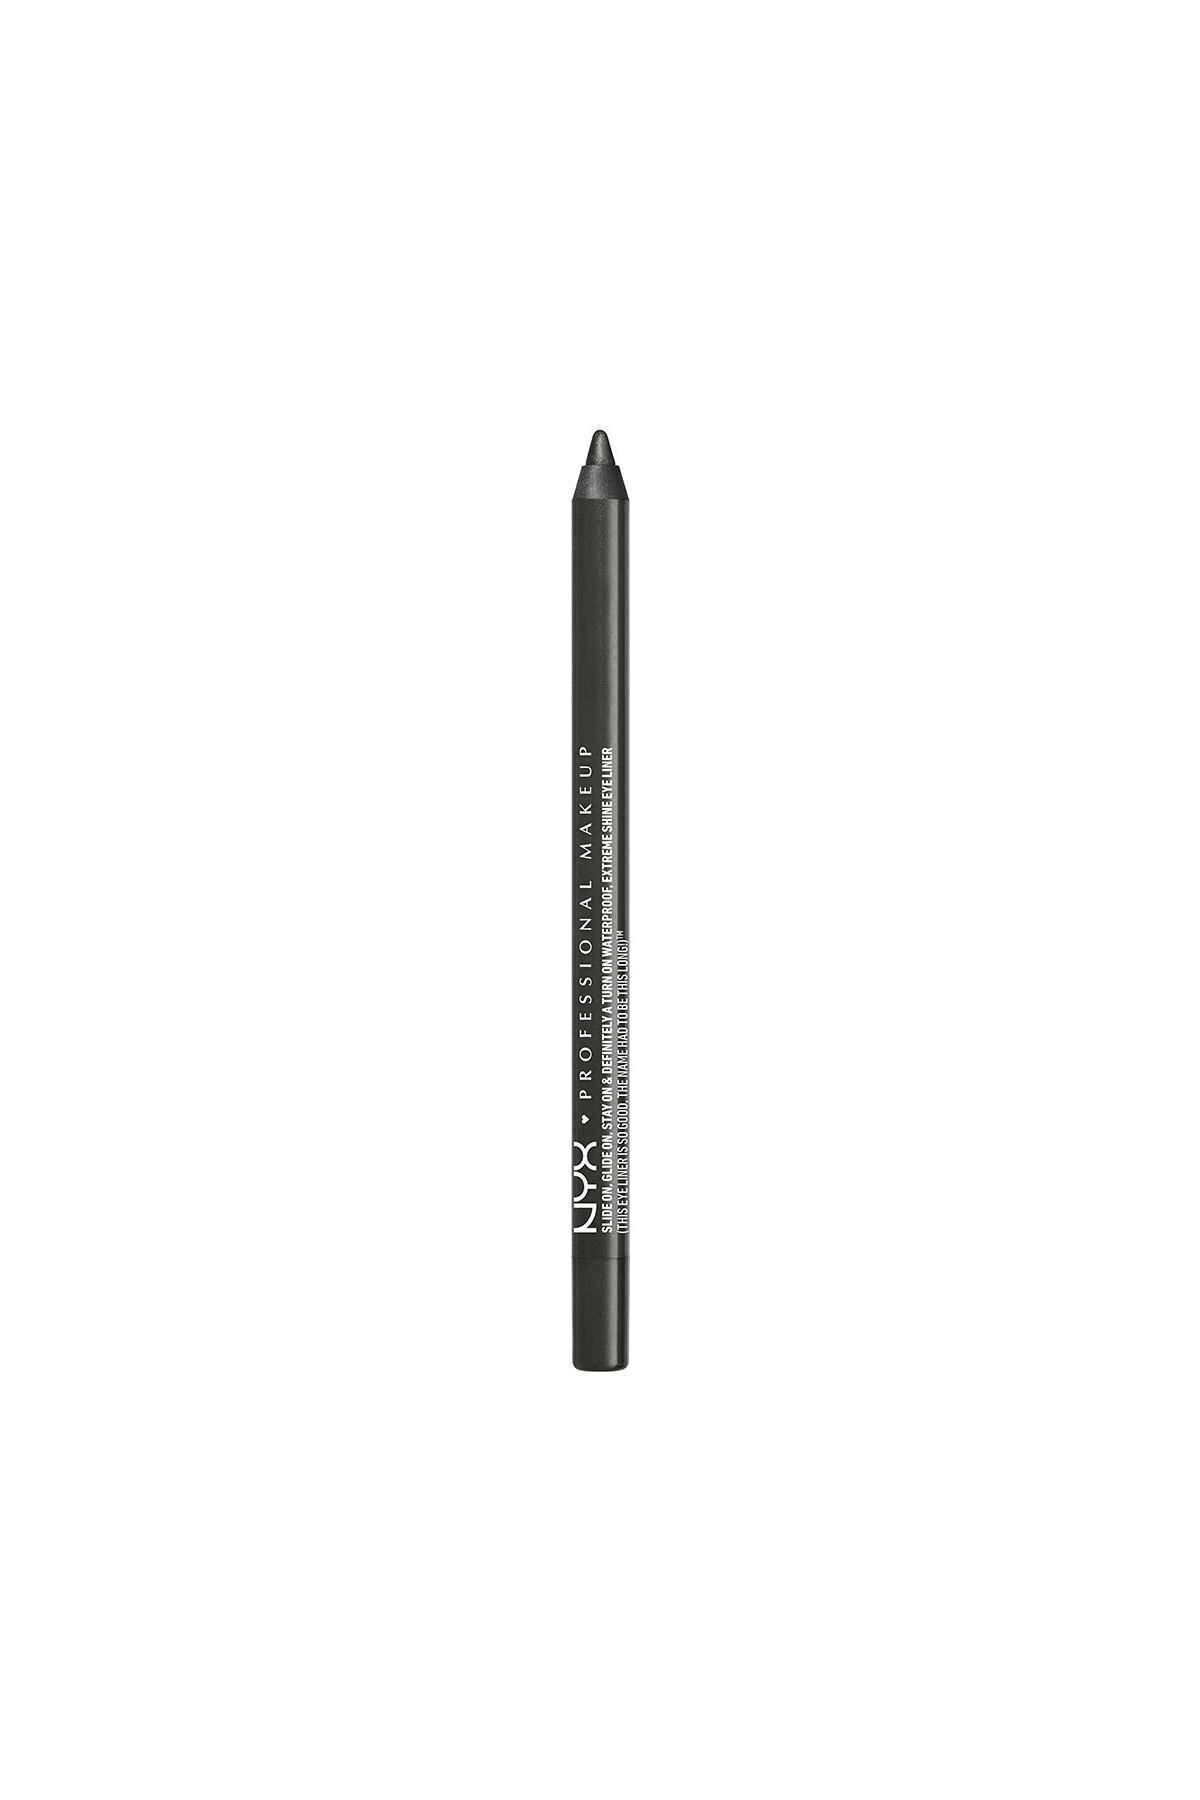 NYX Professional Makeup Gri Göz Kalemi - Slide on Eye Pencil Gun Metal 6 g 800897141264